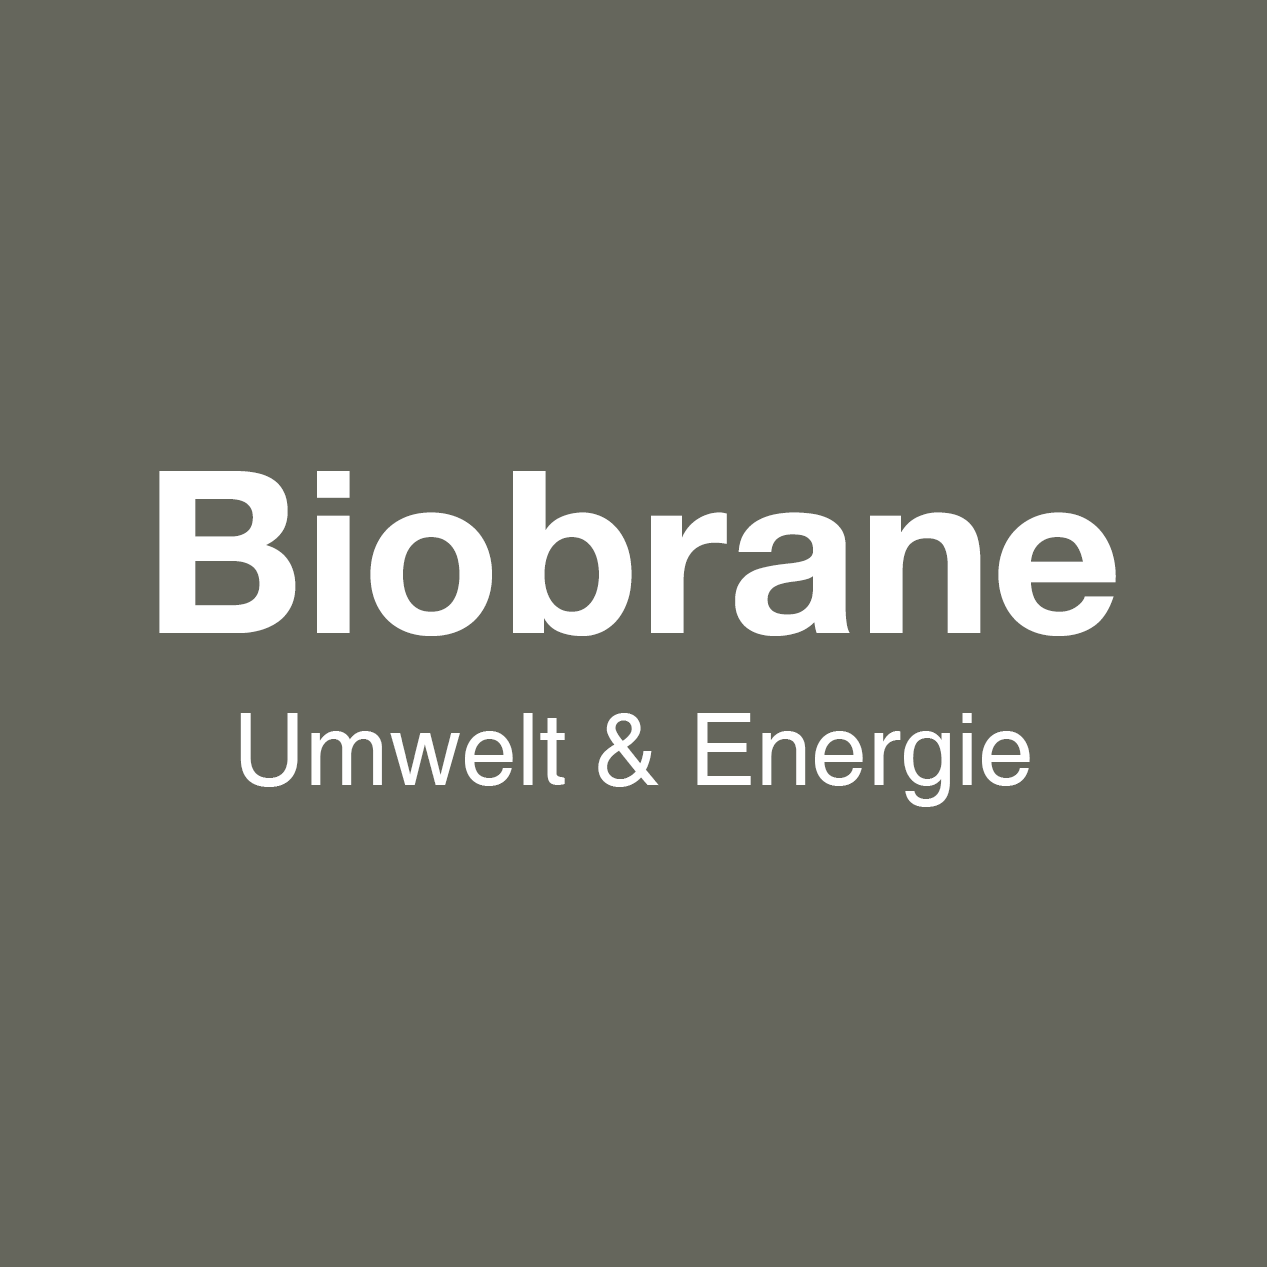 biobrane range